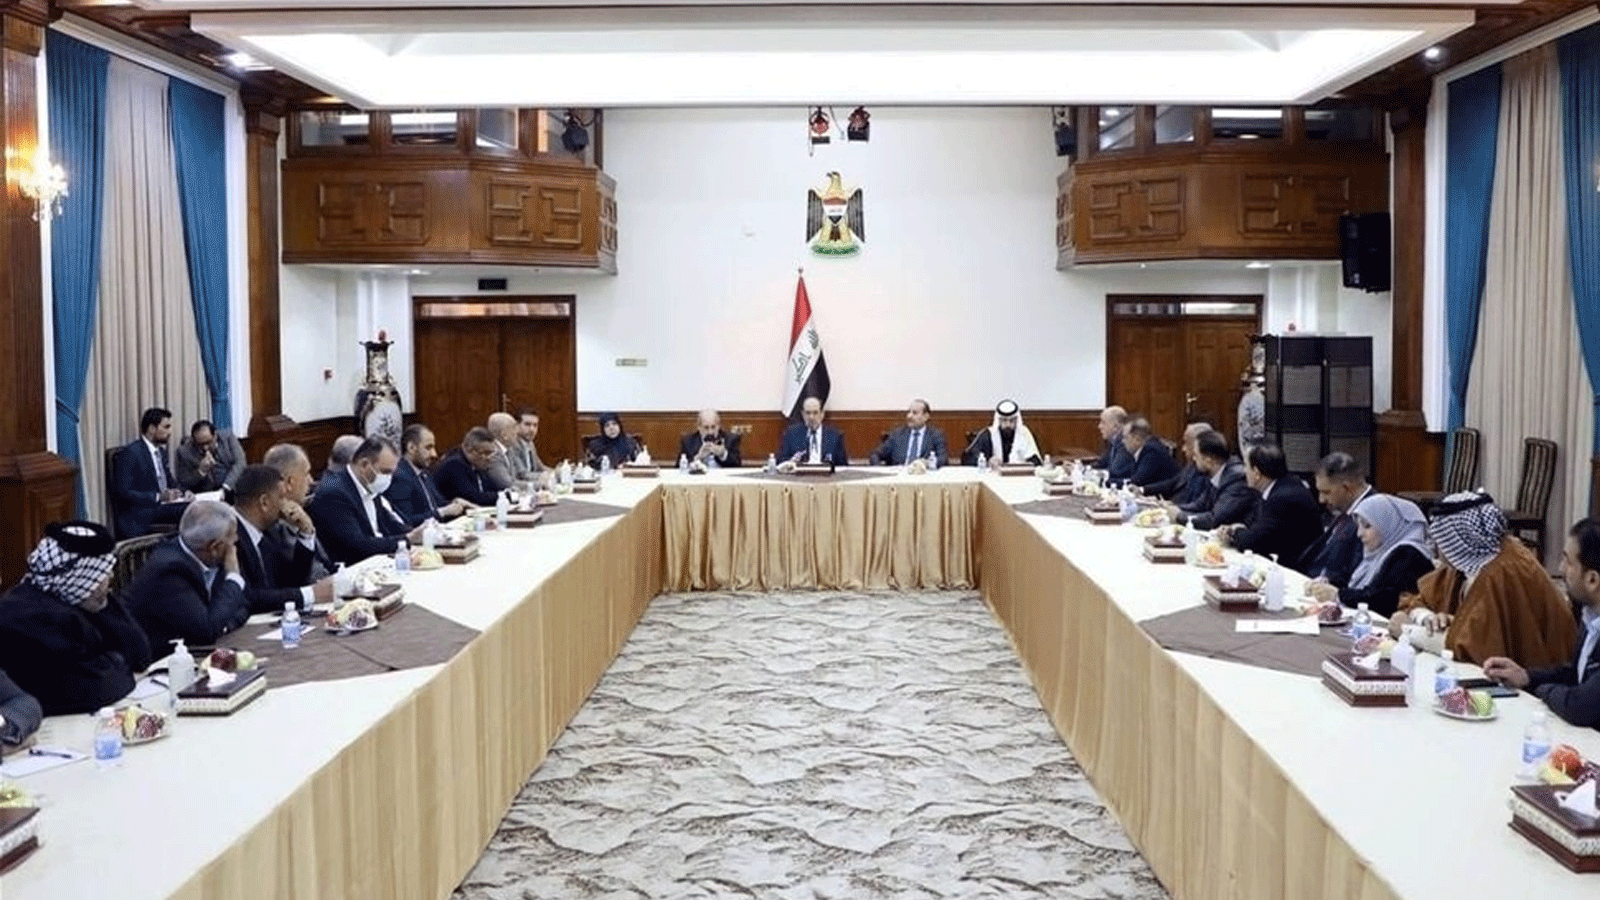 قادة الإطار الشيعي العراقي المالي لإيران خلال اجتماع لبحث الأزمة السياسية في البلاد (تويتر)